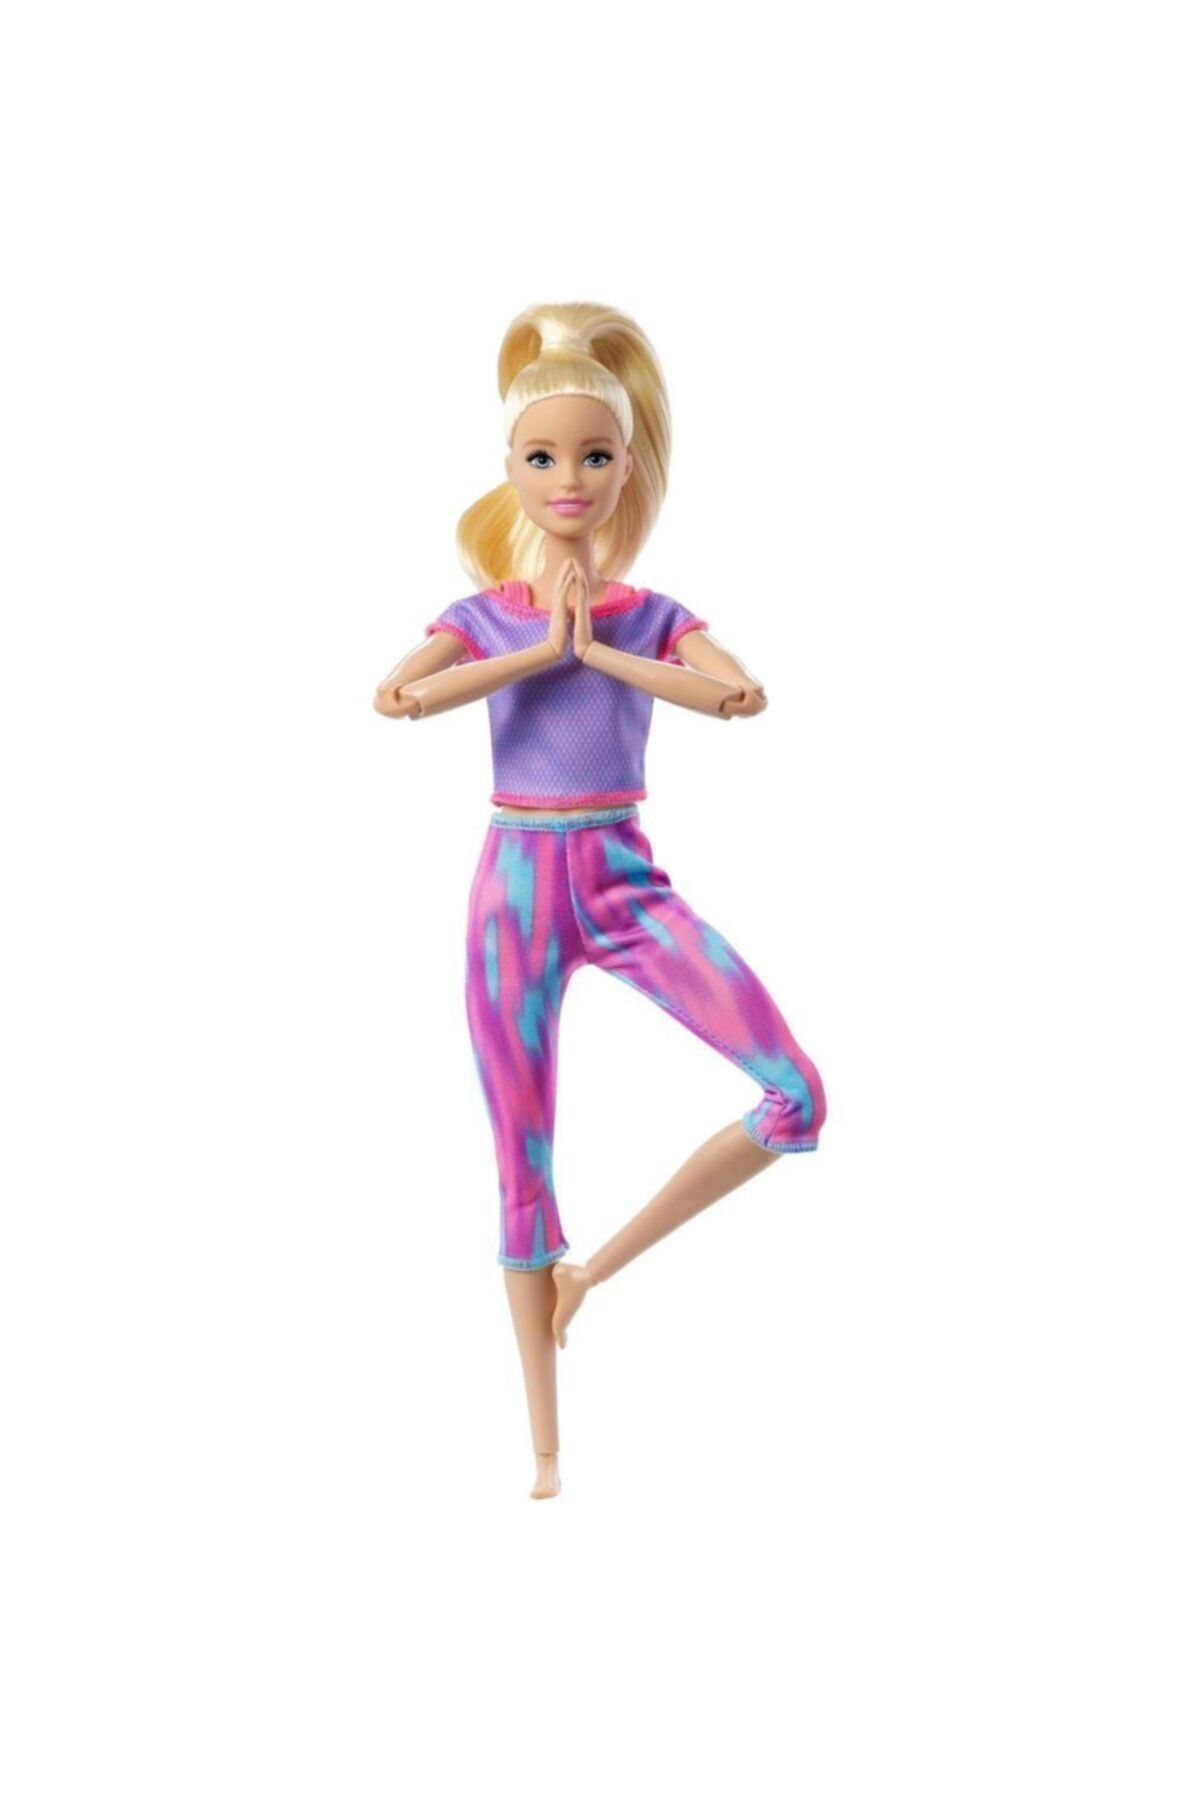 Hasbro Barbie Sonsuz Hareket Bebeği Mor Renkli Spor Kıyafeti Ile Sarışın Uzun Saçlı Bebek